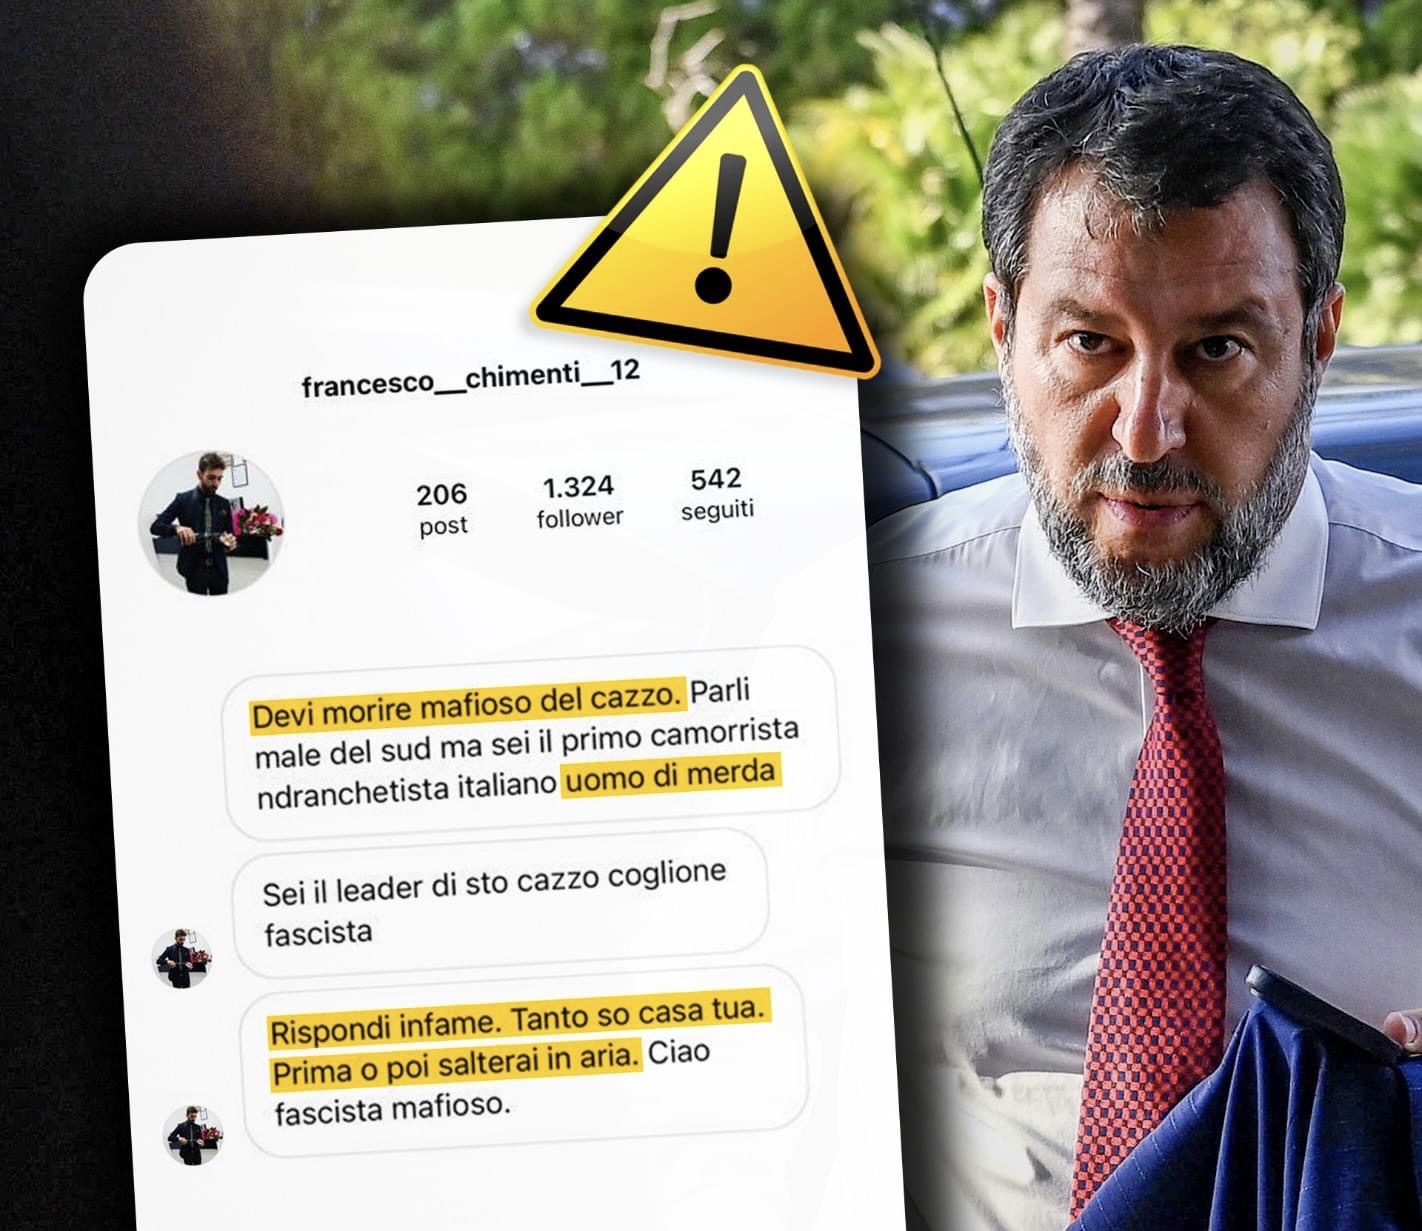 Minacce di morte a Salvini, Schifani: “Clima di odio da condannare”